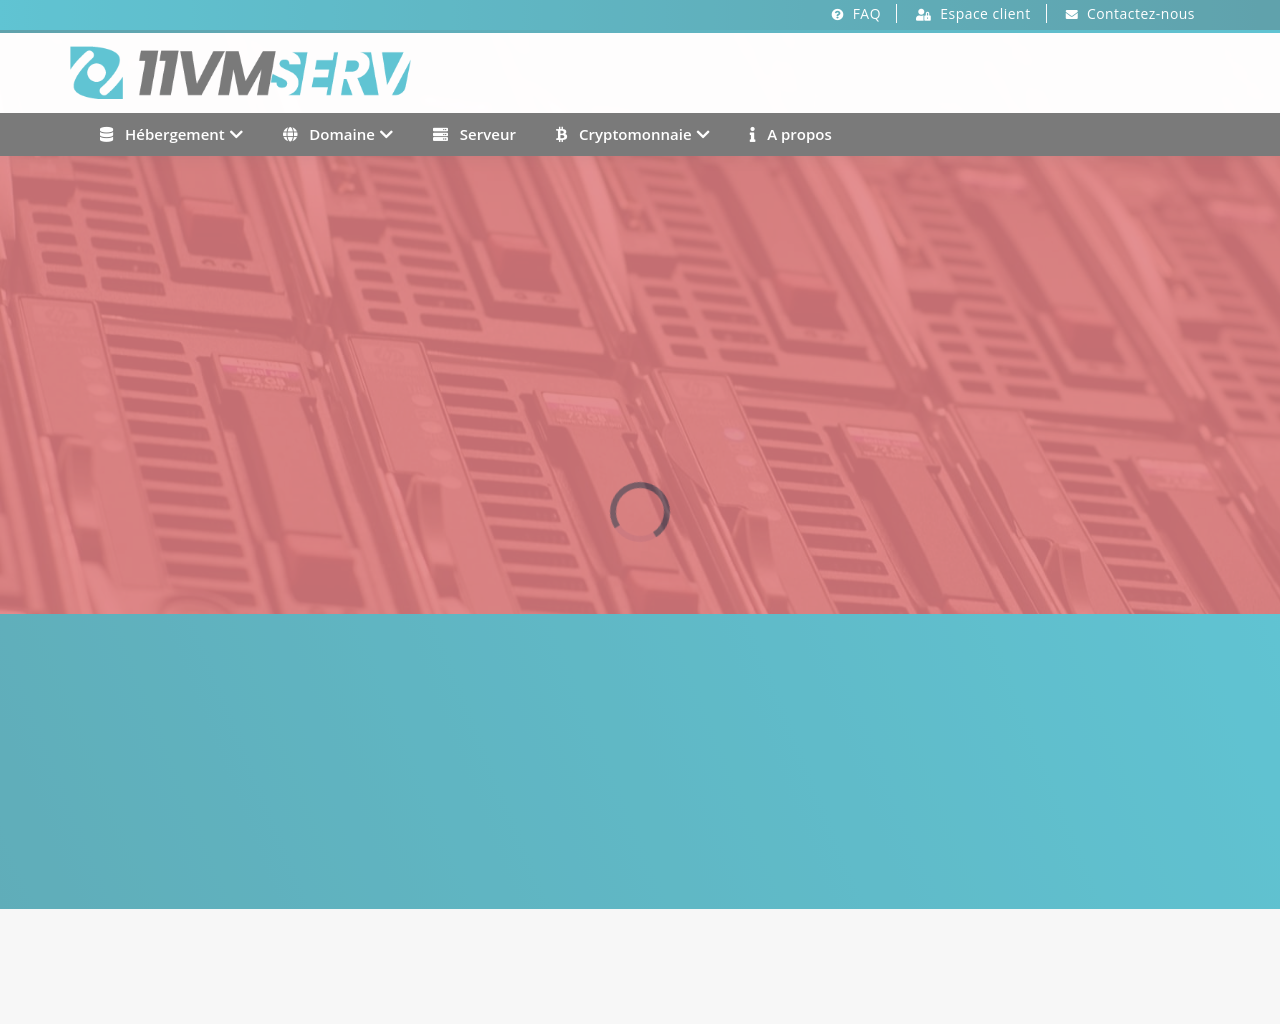 11vm-serv.net